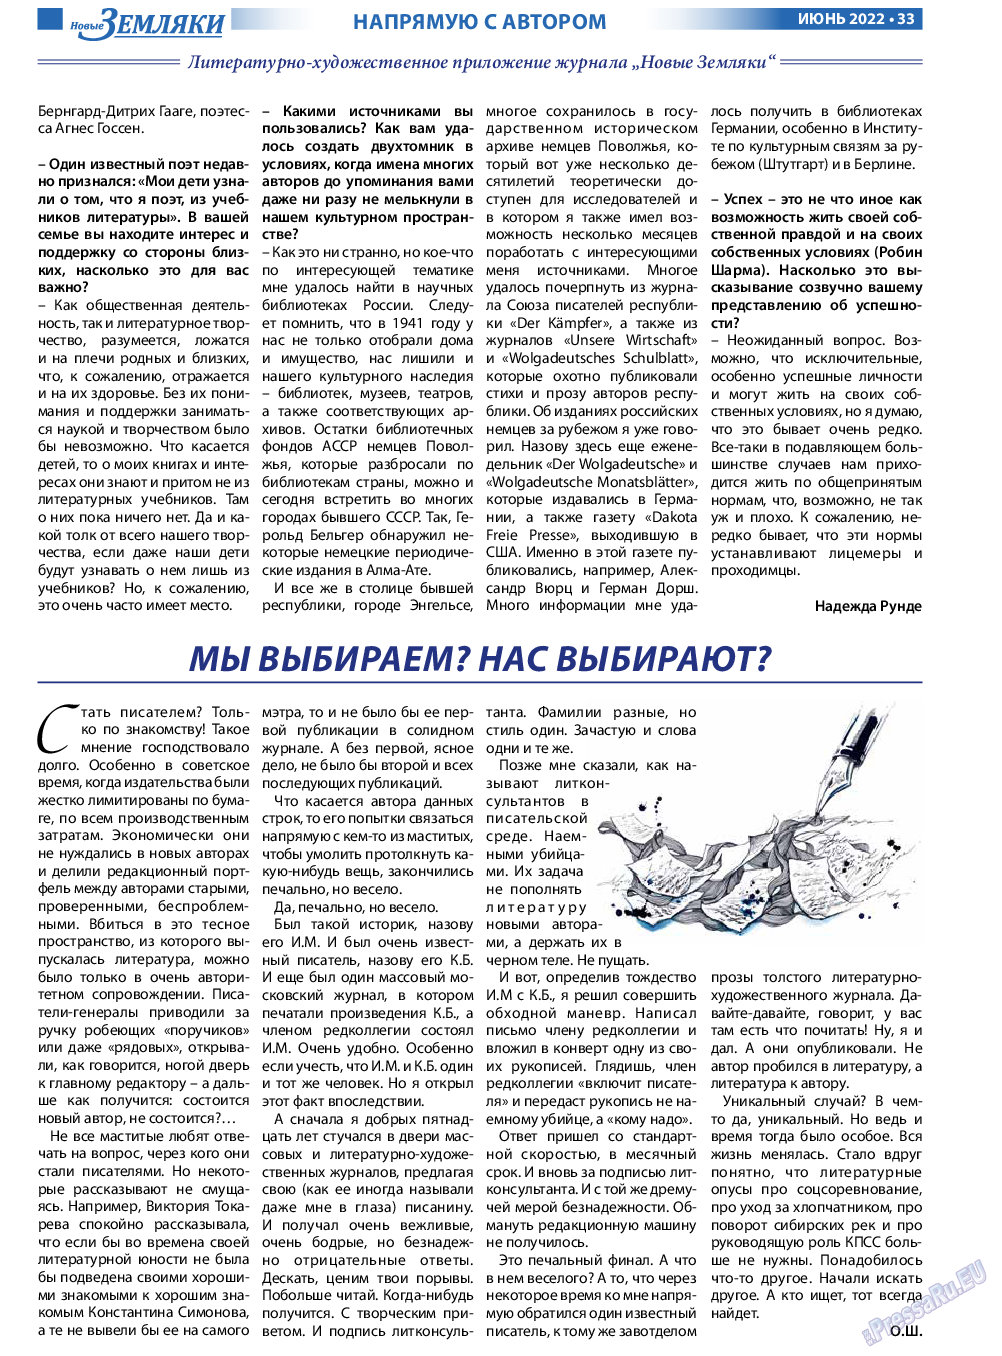 Новые Земляки, газета. 2022 №6 стр.33